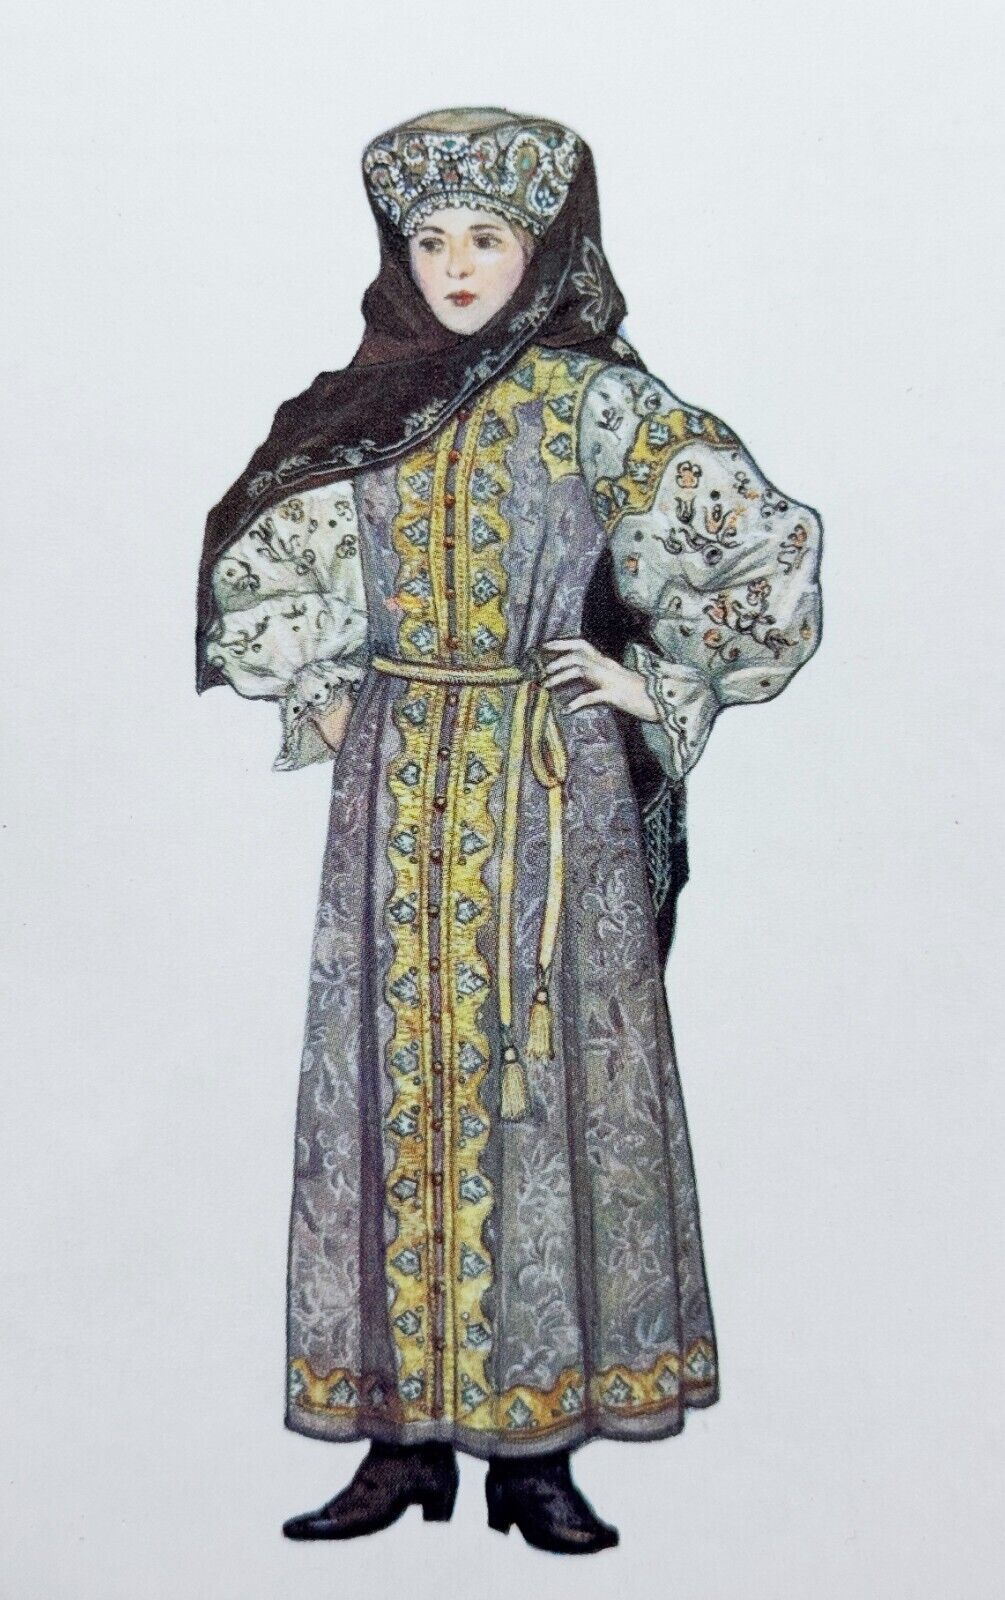 1969 Art Folklore Girl in folk costume Ural Cossack Vintage Postcard